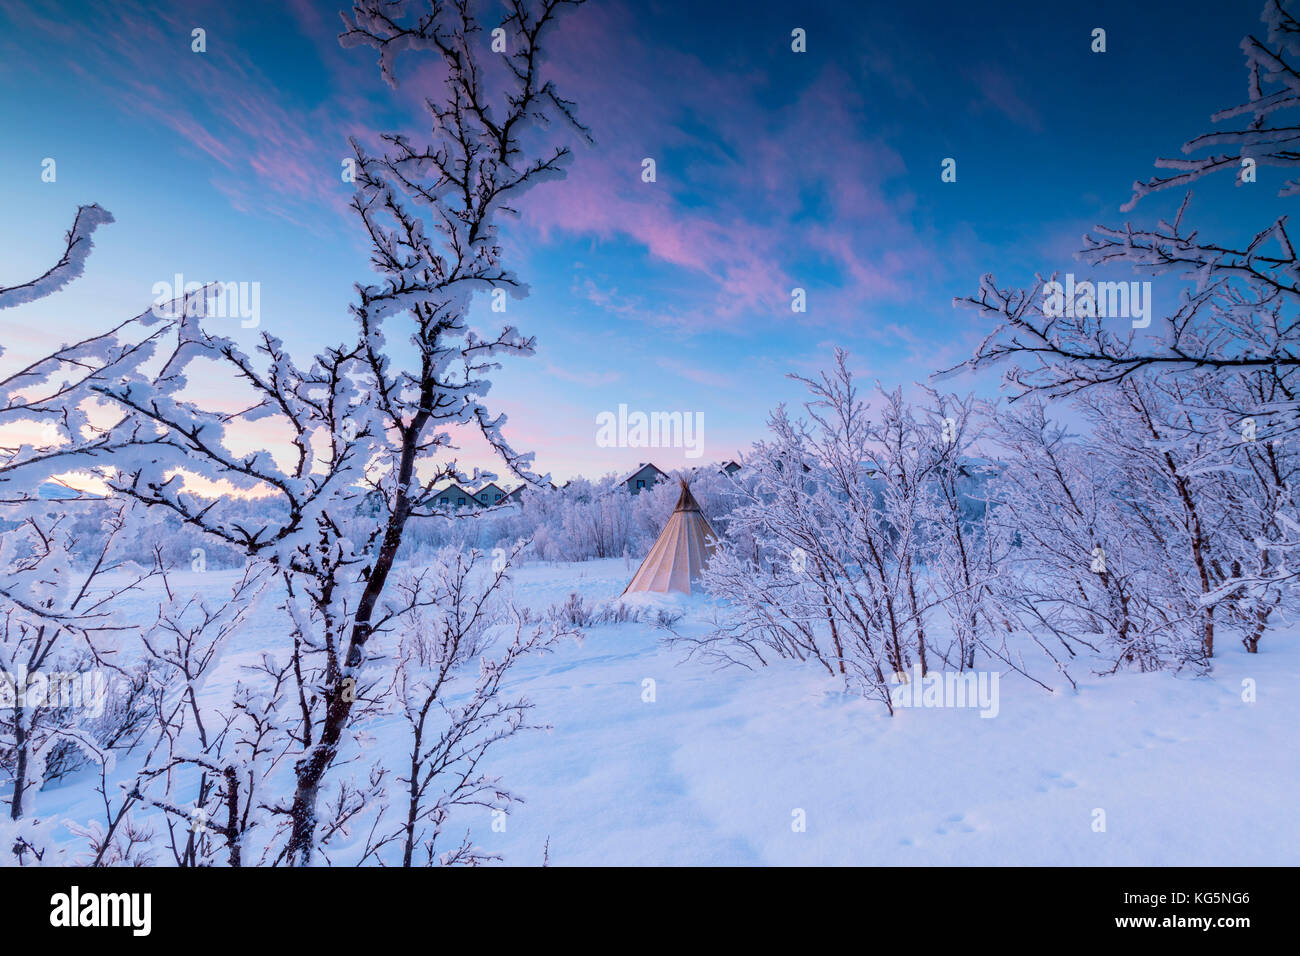 Sami isolé tente dans la neige, abisko, municipalité du comté de Norrbotten, Kiruna, Lapland, Sweden Banque D'Images